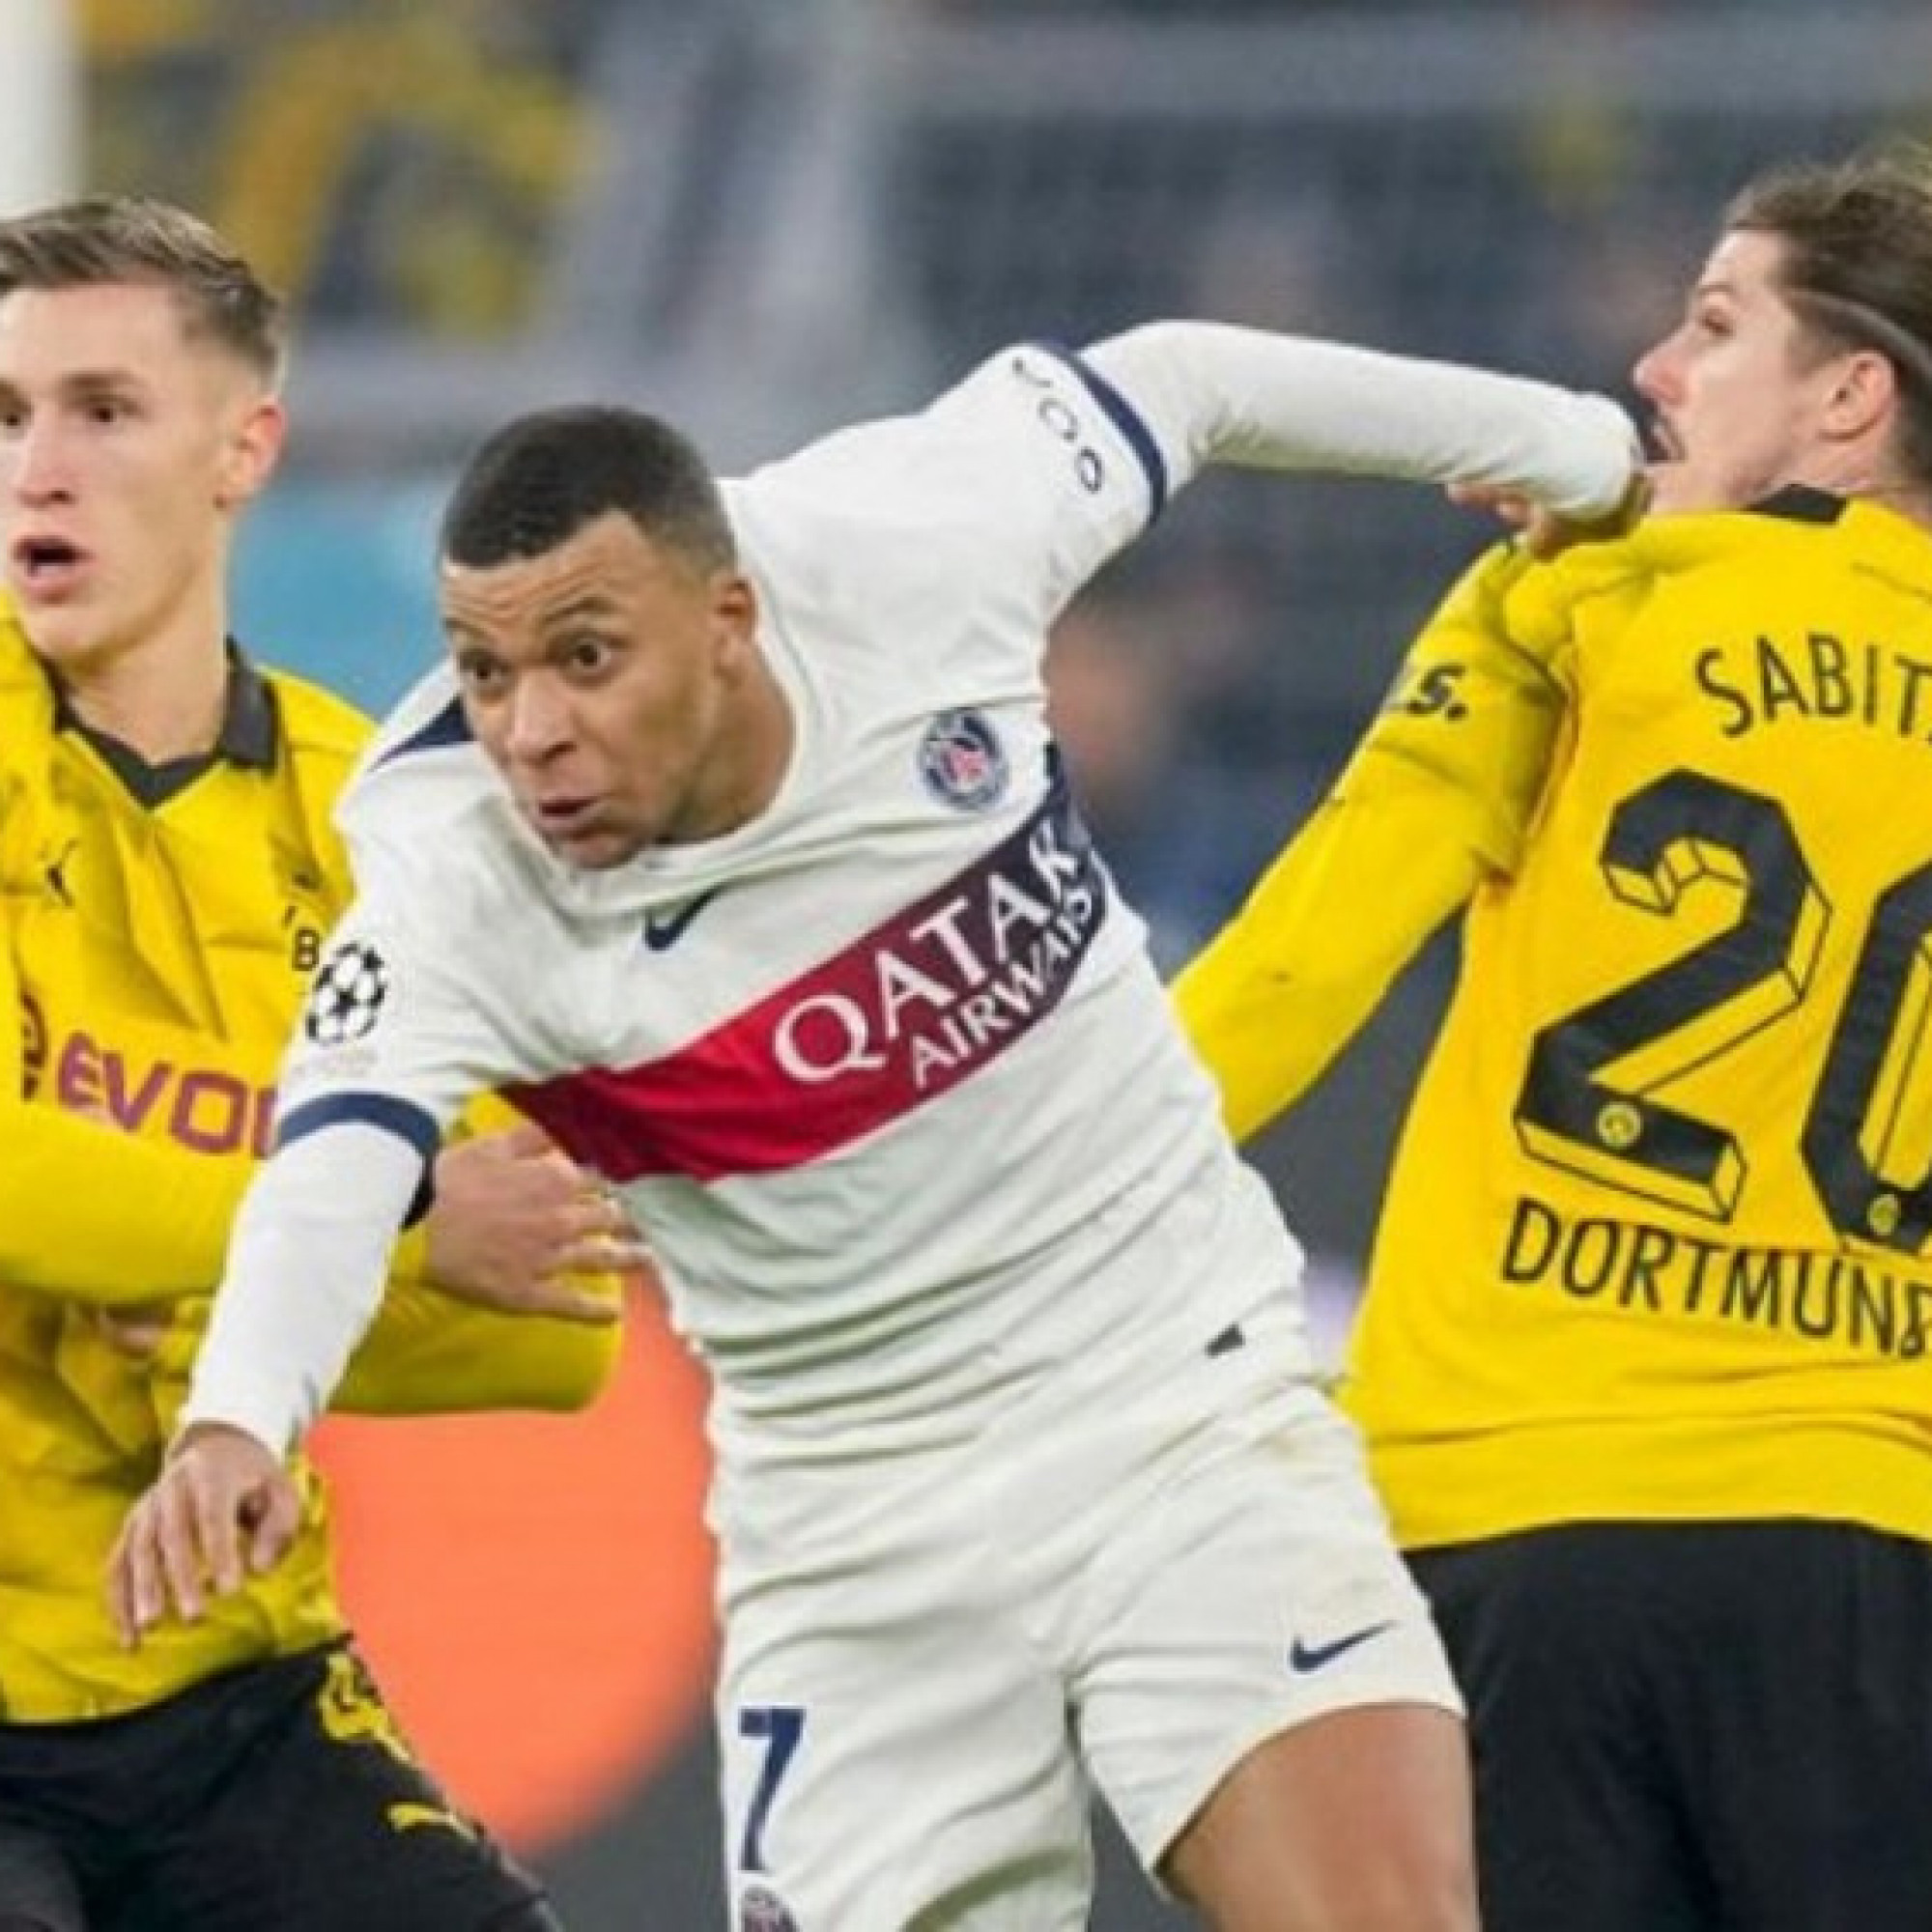  - Nhận định bóng đá Dortmund - PSG: Bại binh mơ "phục hận", coi chừng Mbappe (Cúp C1)